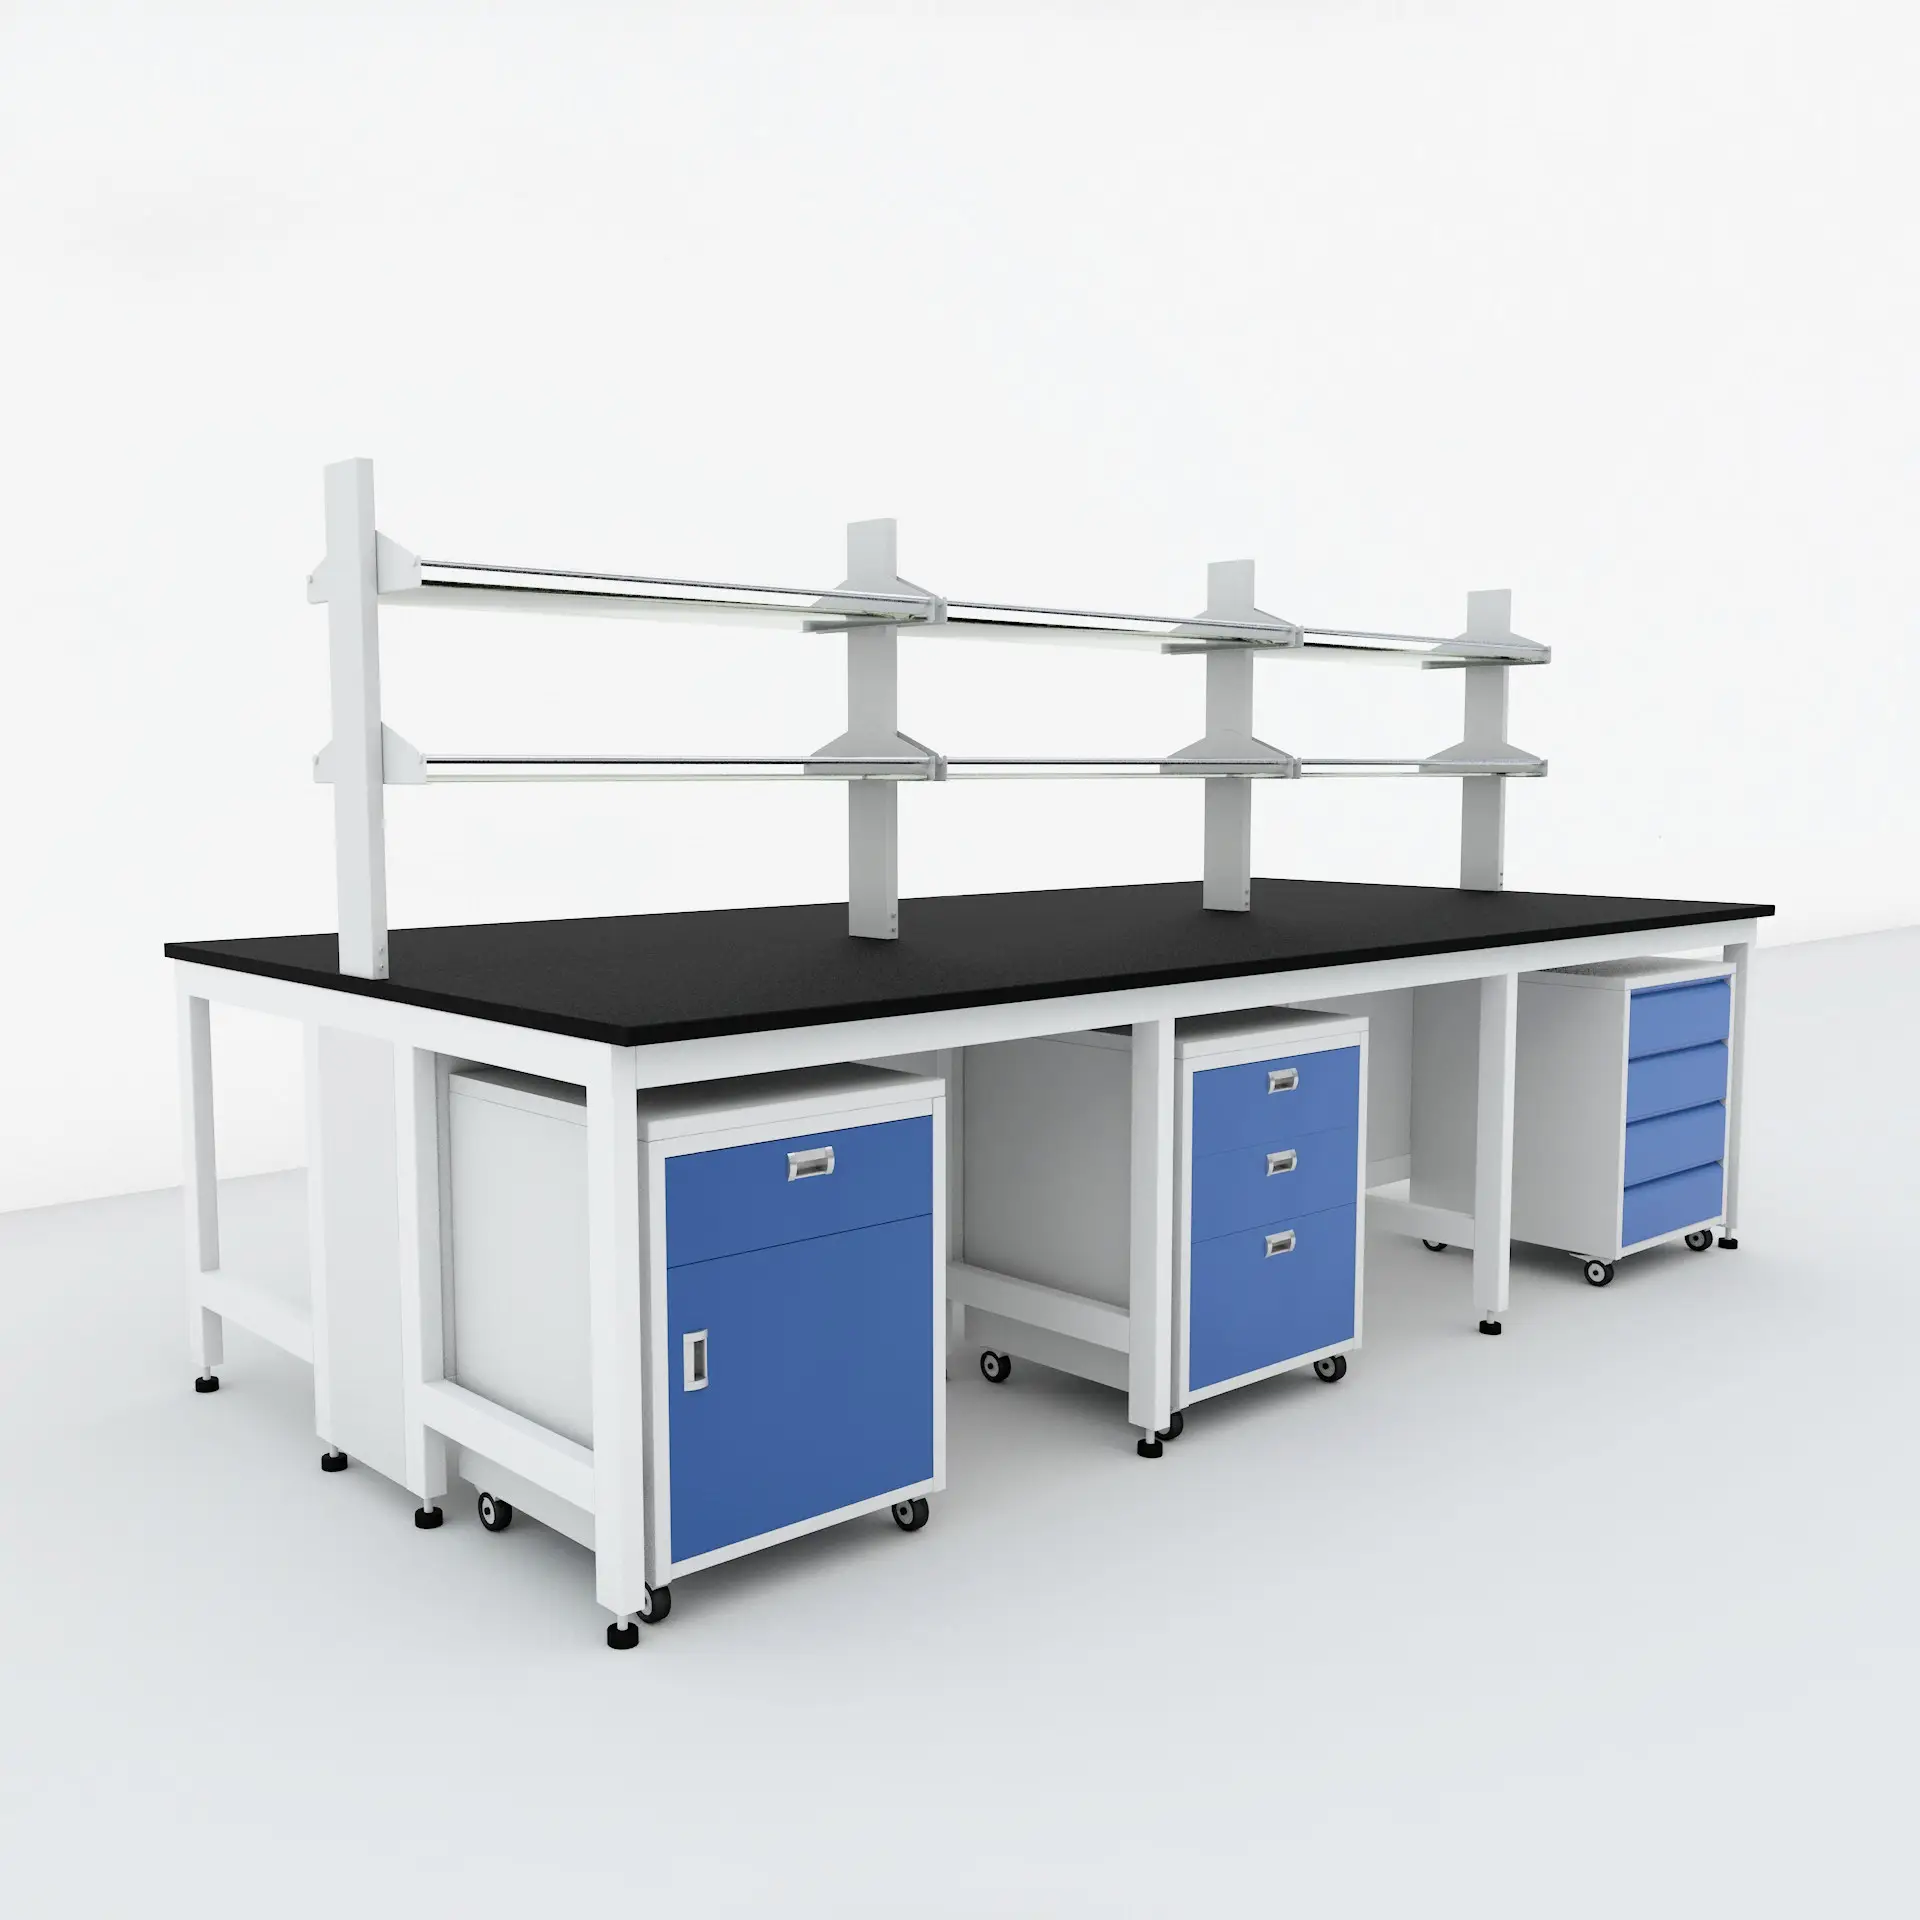 Bancada de trabalho do laboratório modular 10ft usados flexíveis pode personalizar e especificamente projetado